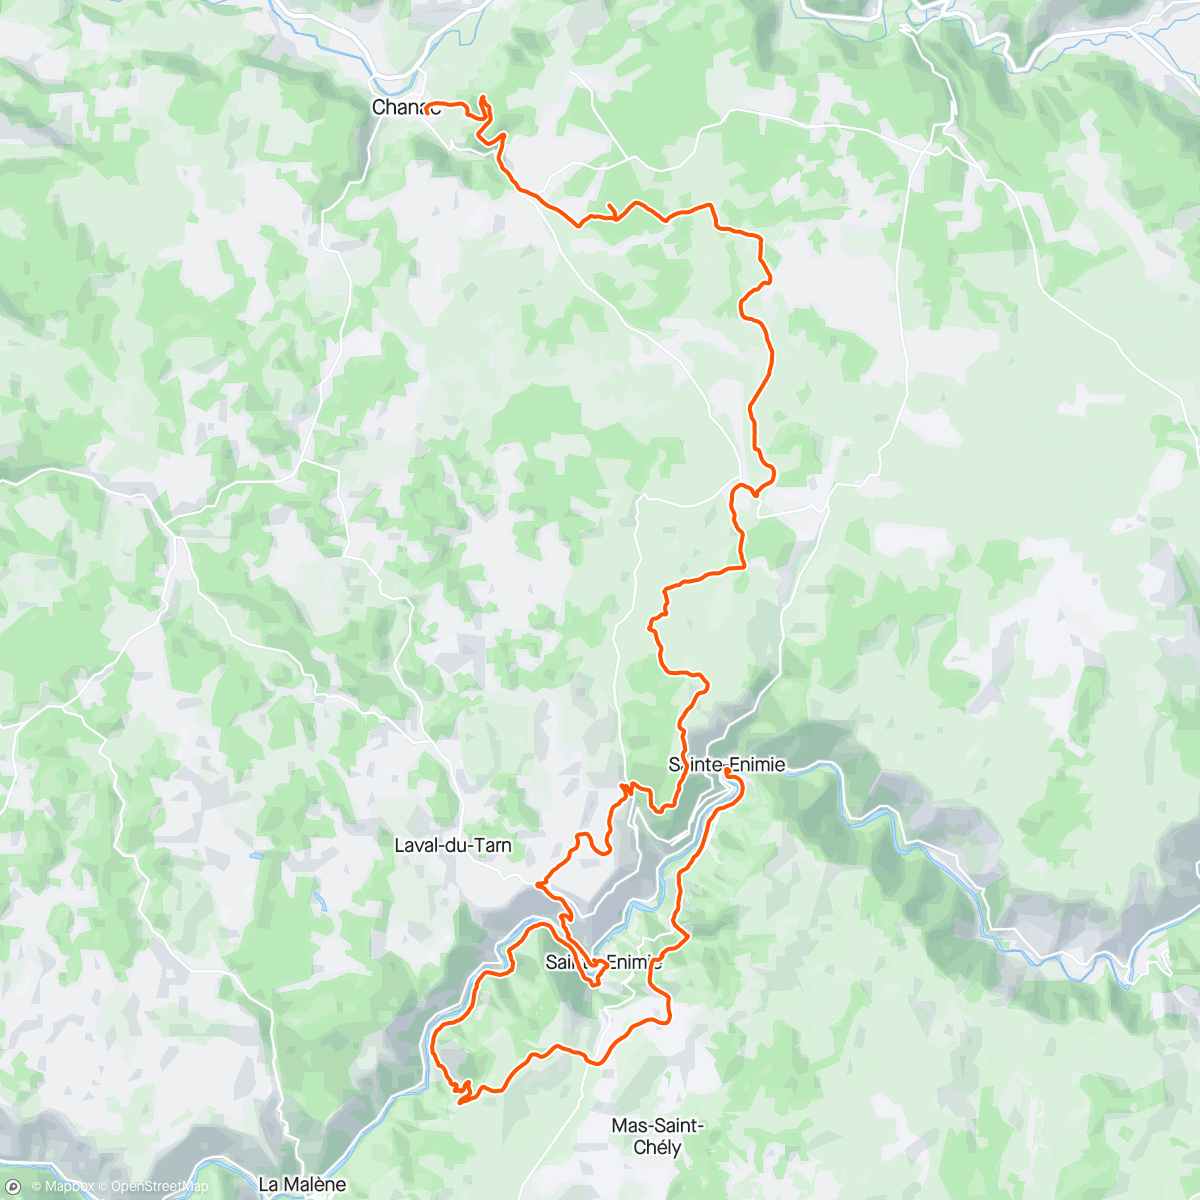 「Lozère trail」活動的地圖